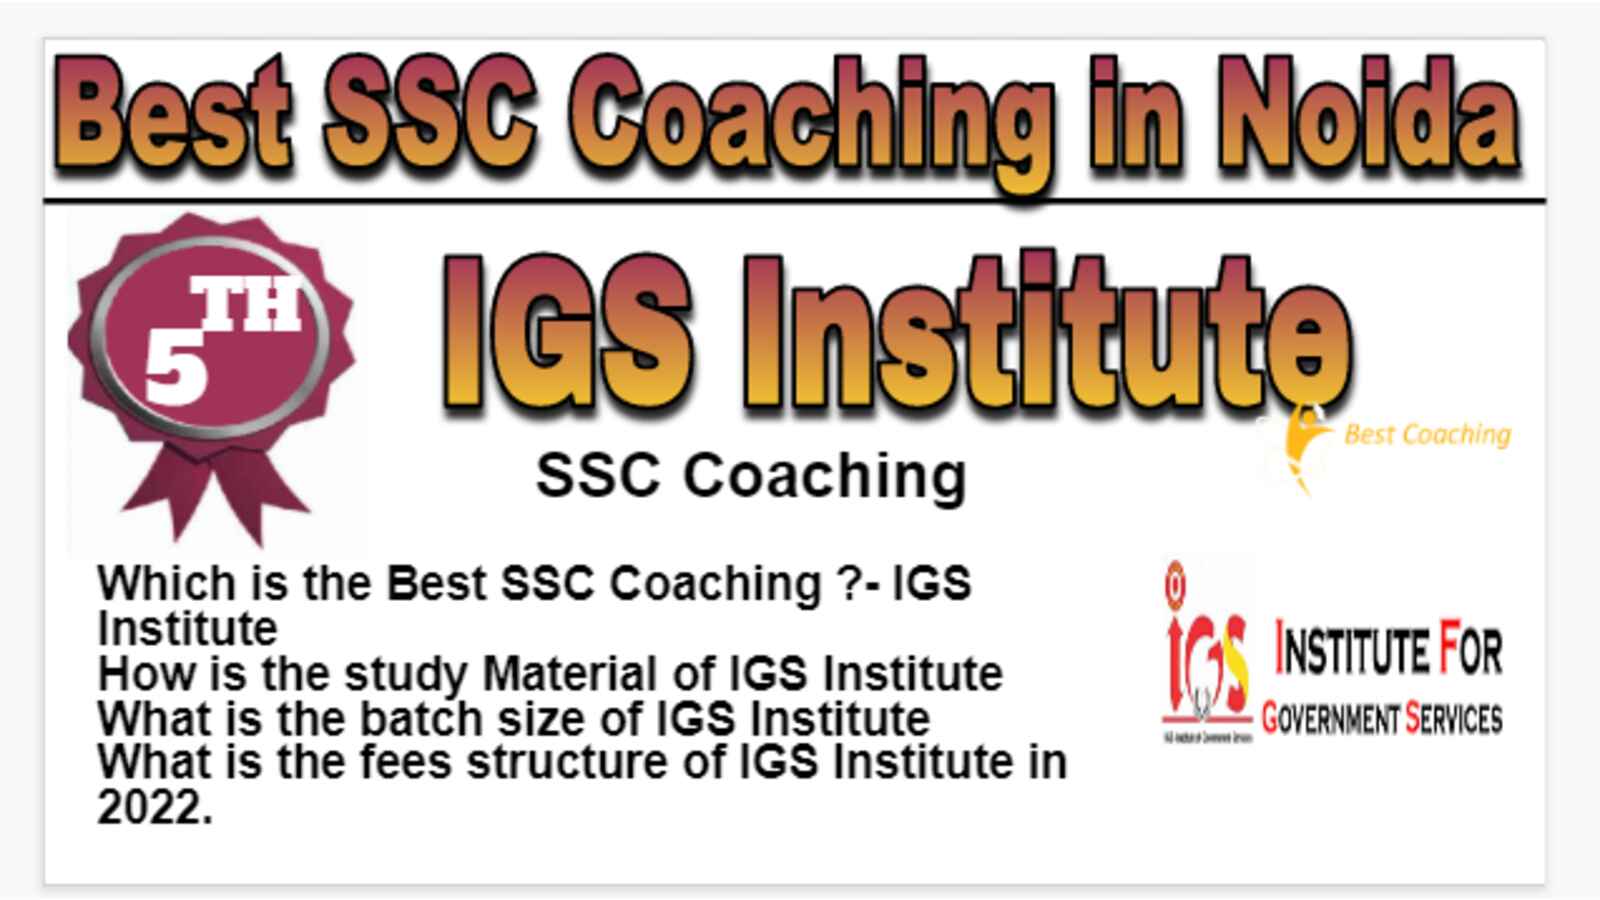 Rank 5 Best SSC Coaching in Noida